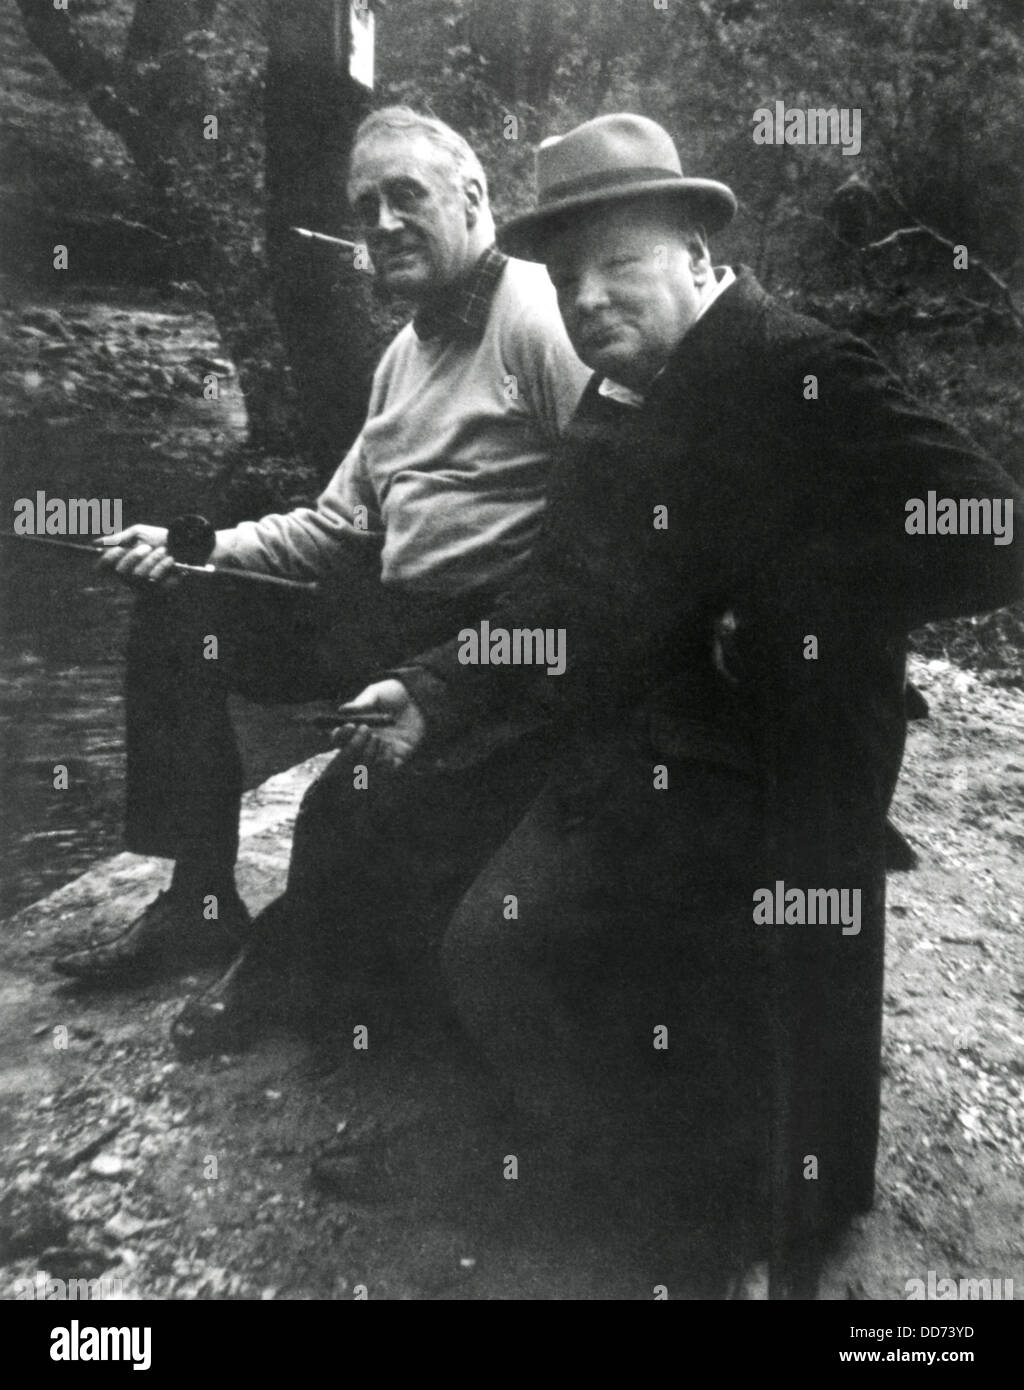 Franklin Roosevelt und Winston Churchill Angeln im "Shangri-La", Maryland. Mai 1943. Präsident Dwight Eisenhower, umbenannt die Stockfoto